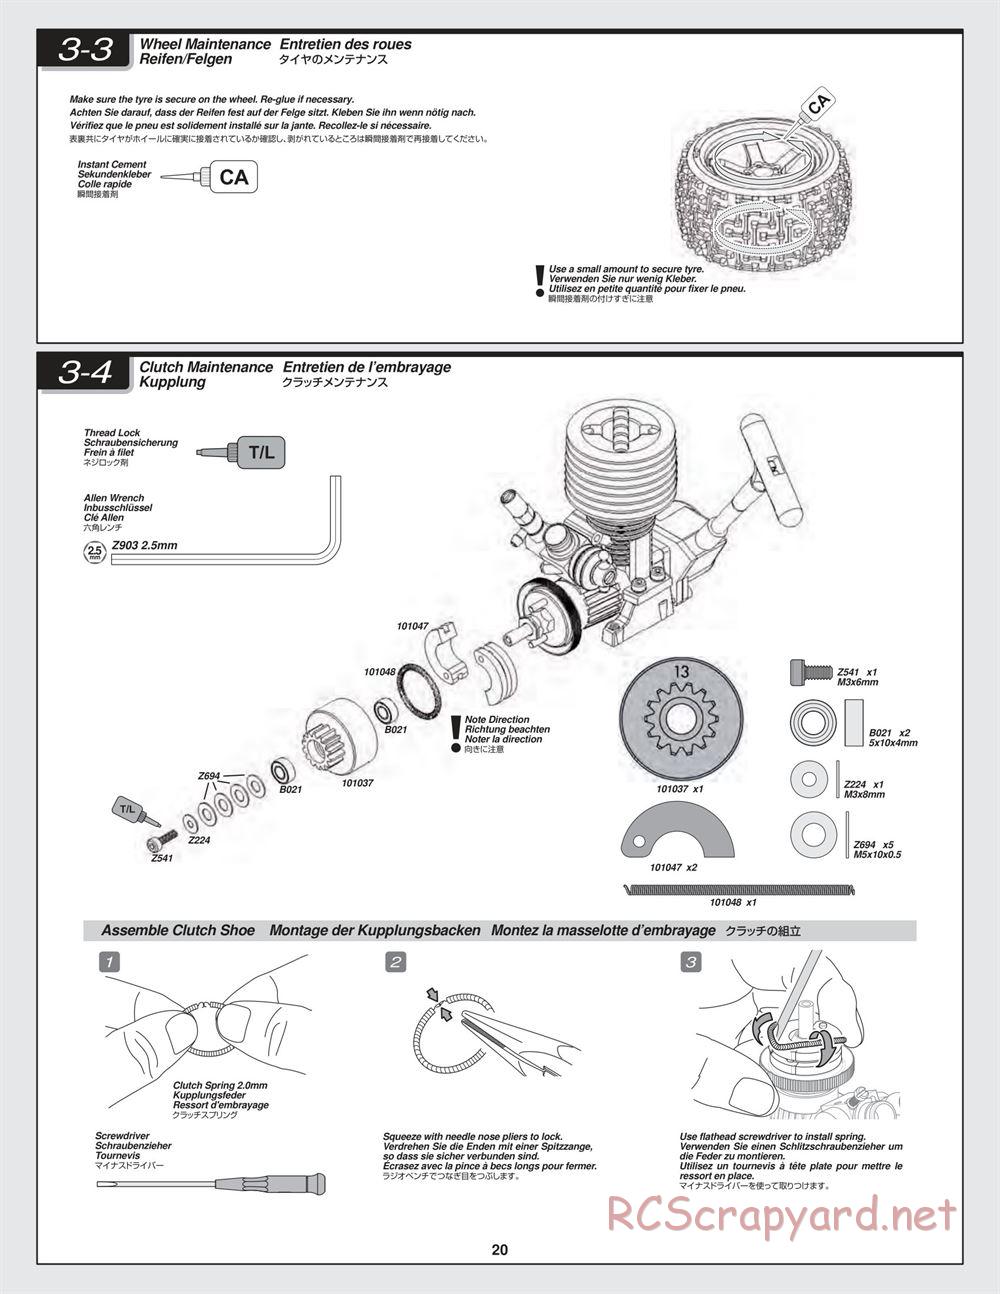 HPI - Bullet MT 3.0 - Manual - Page 20